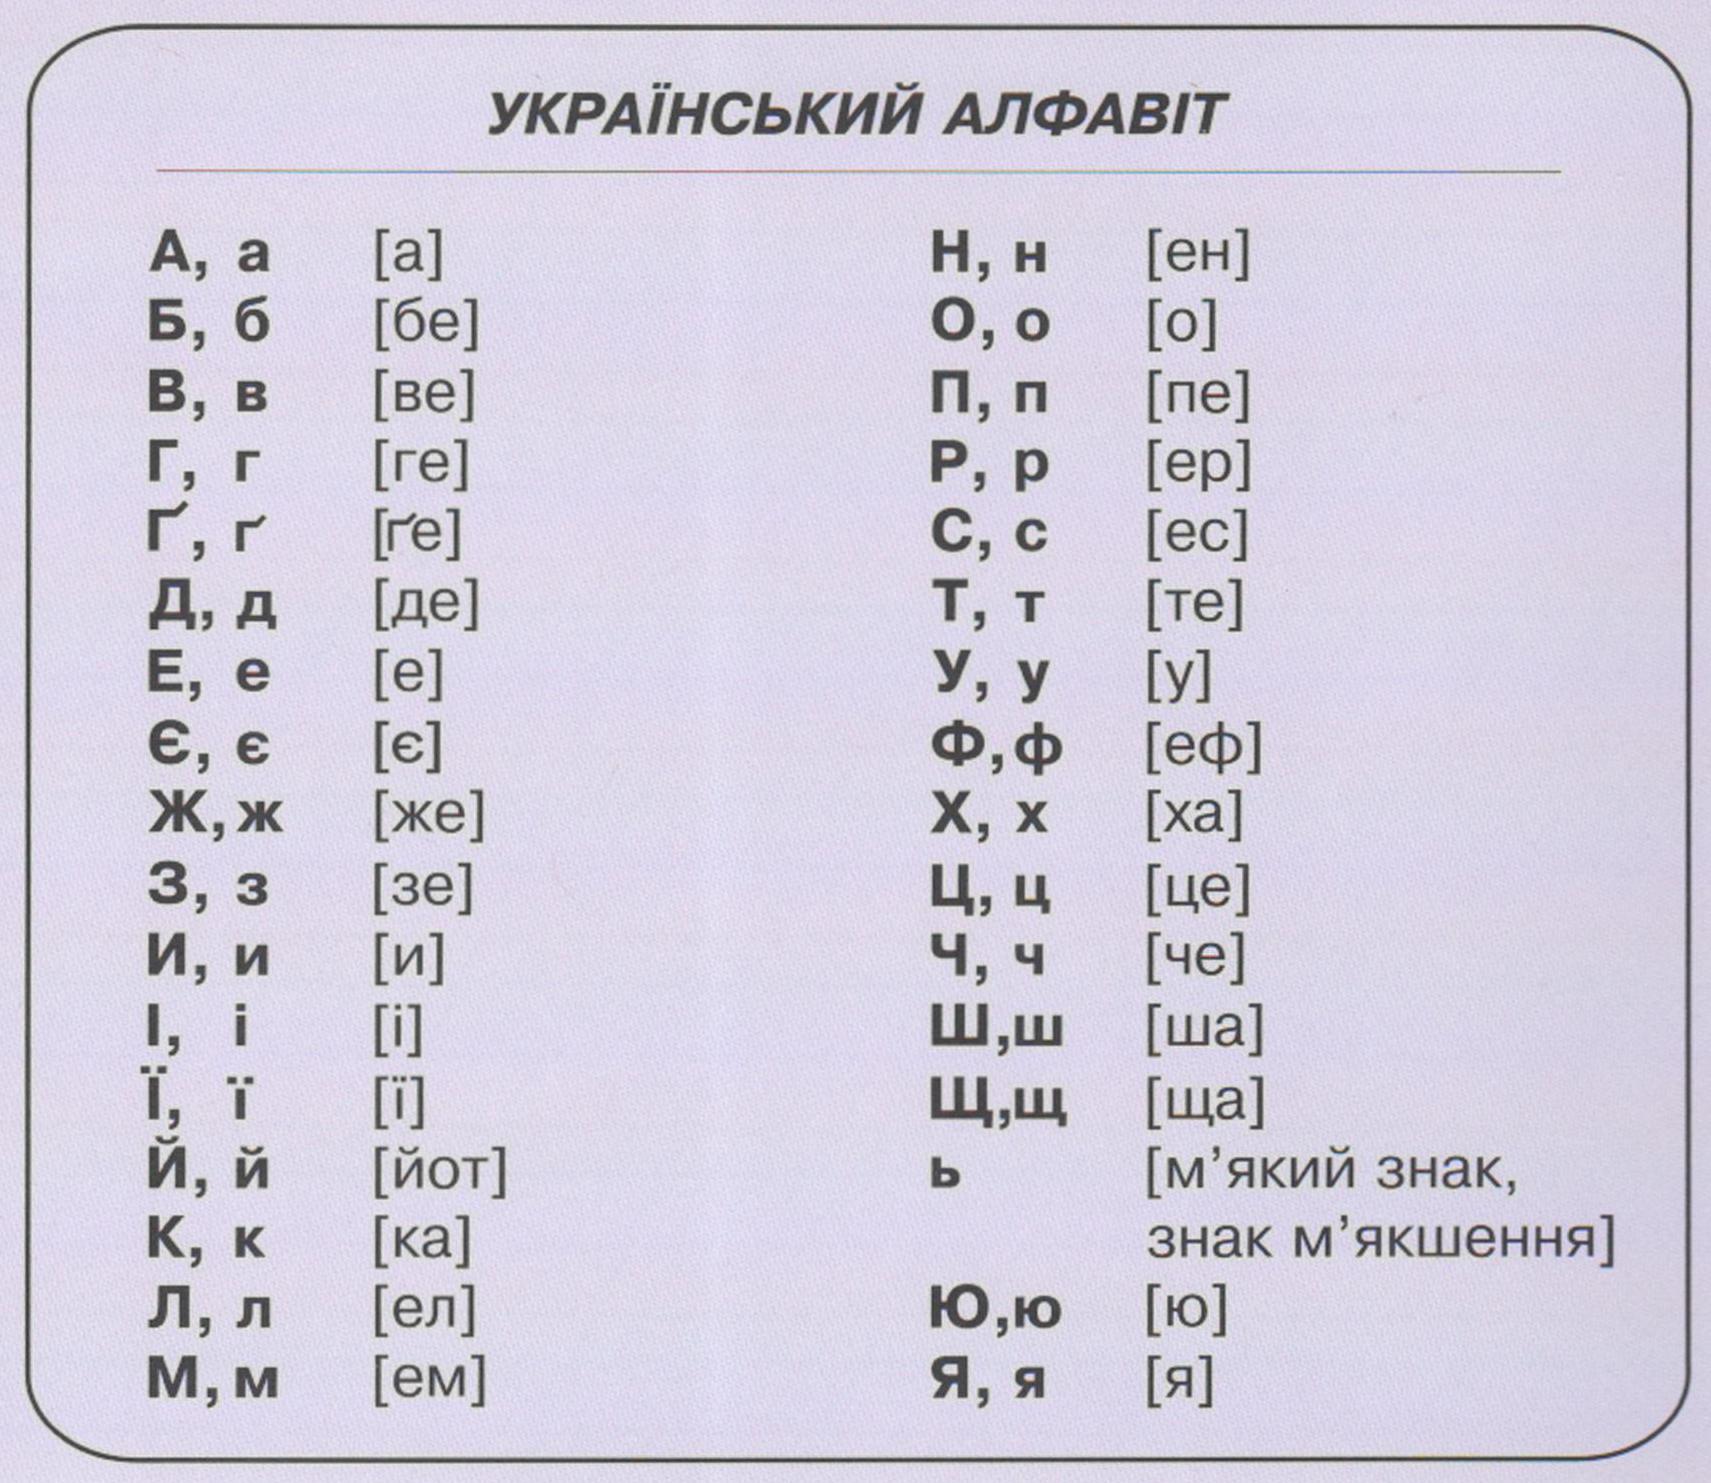 Какая буква украины. Украинский алфавит с произношением на русском. Украинский алфавит буквы с русским произношением. Украинский алфавит произношение букв. Украинская Азбука с произношением на русском.